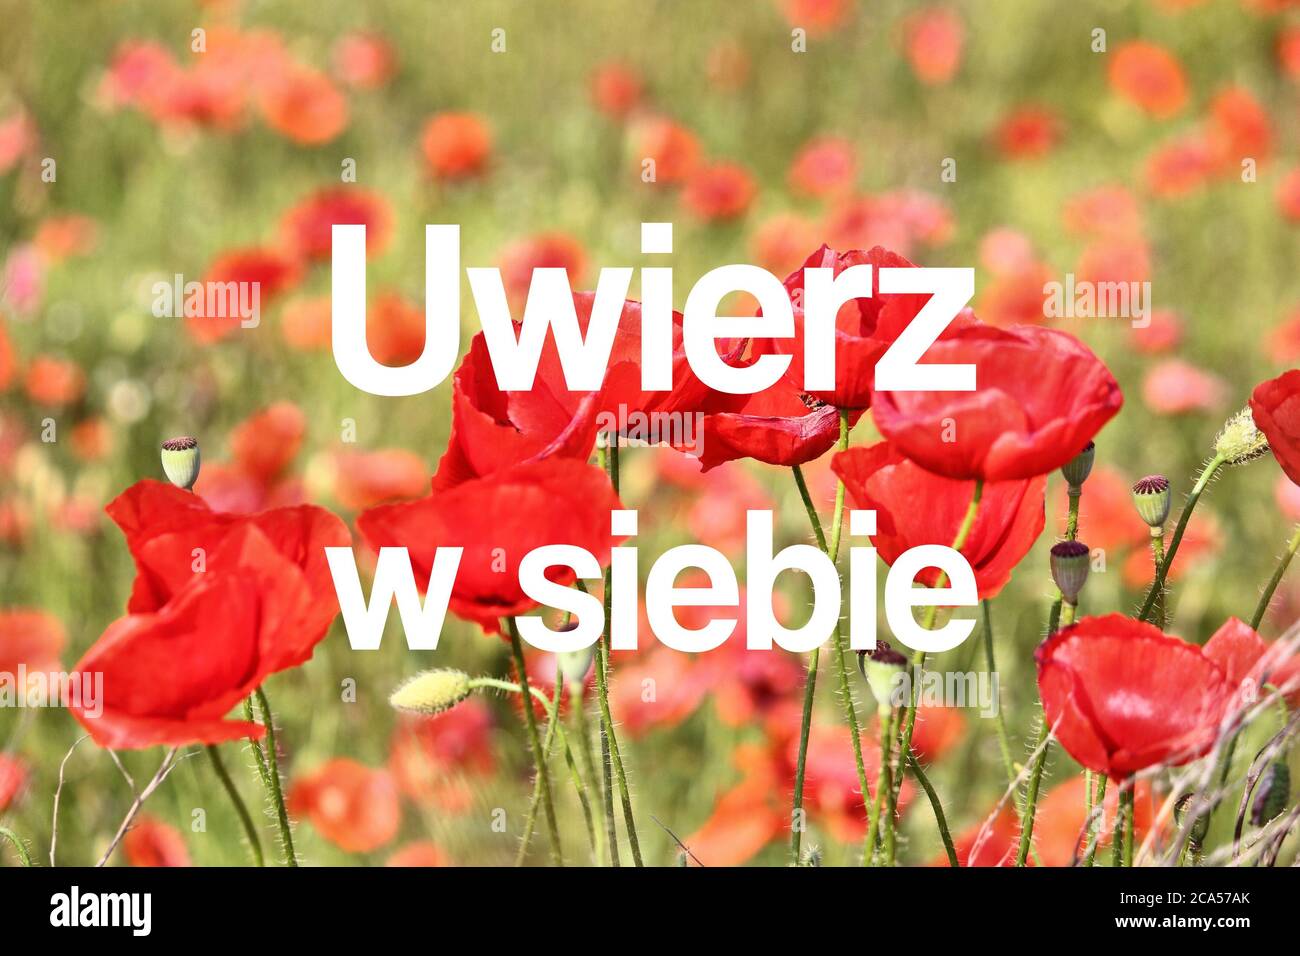 Uwierz W siebie (croyez en vous-même en la langue polonaise). Affiche de motivation en polonais. Banque D'Images